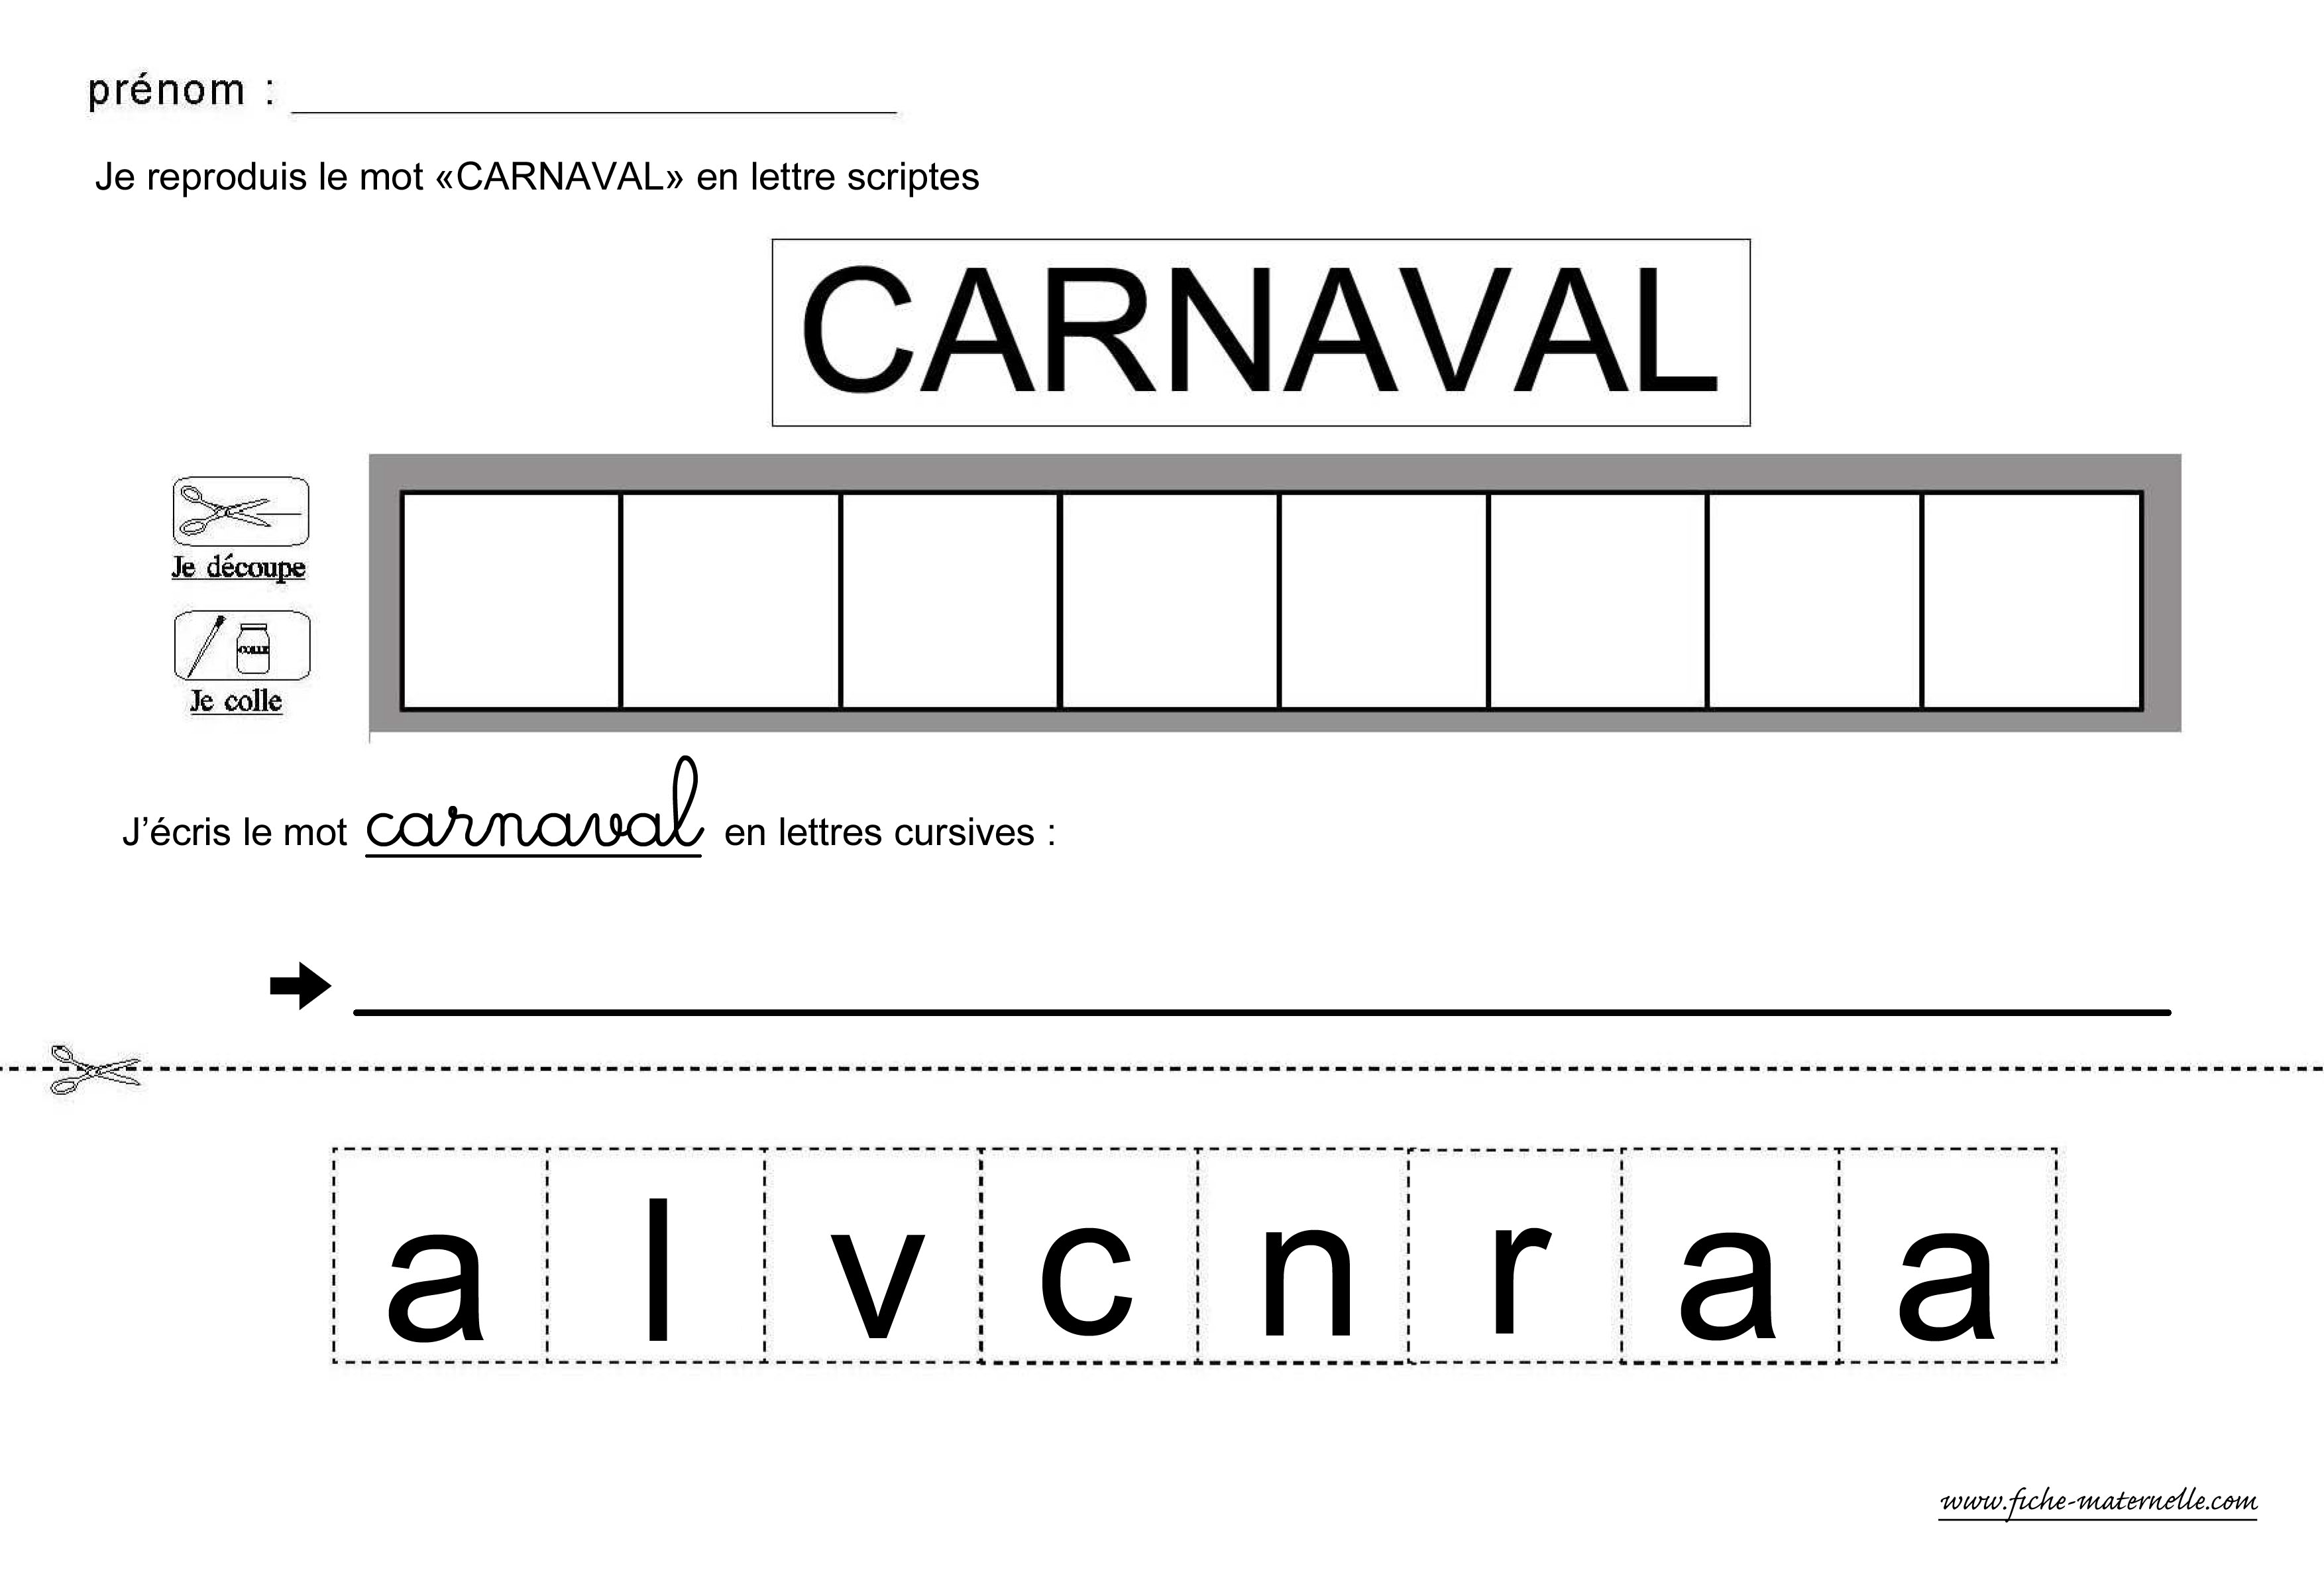 lire et crire le mot carnaval en lettres scriptes